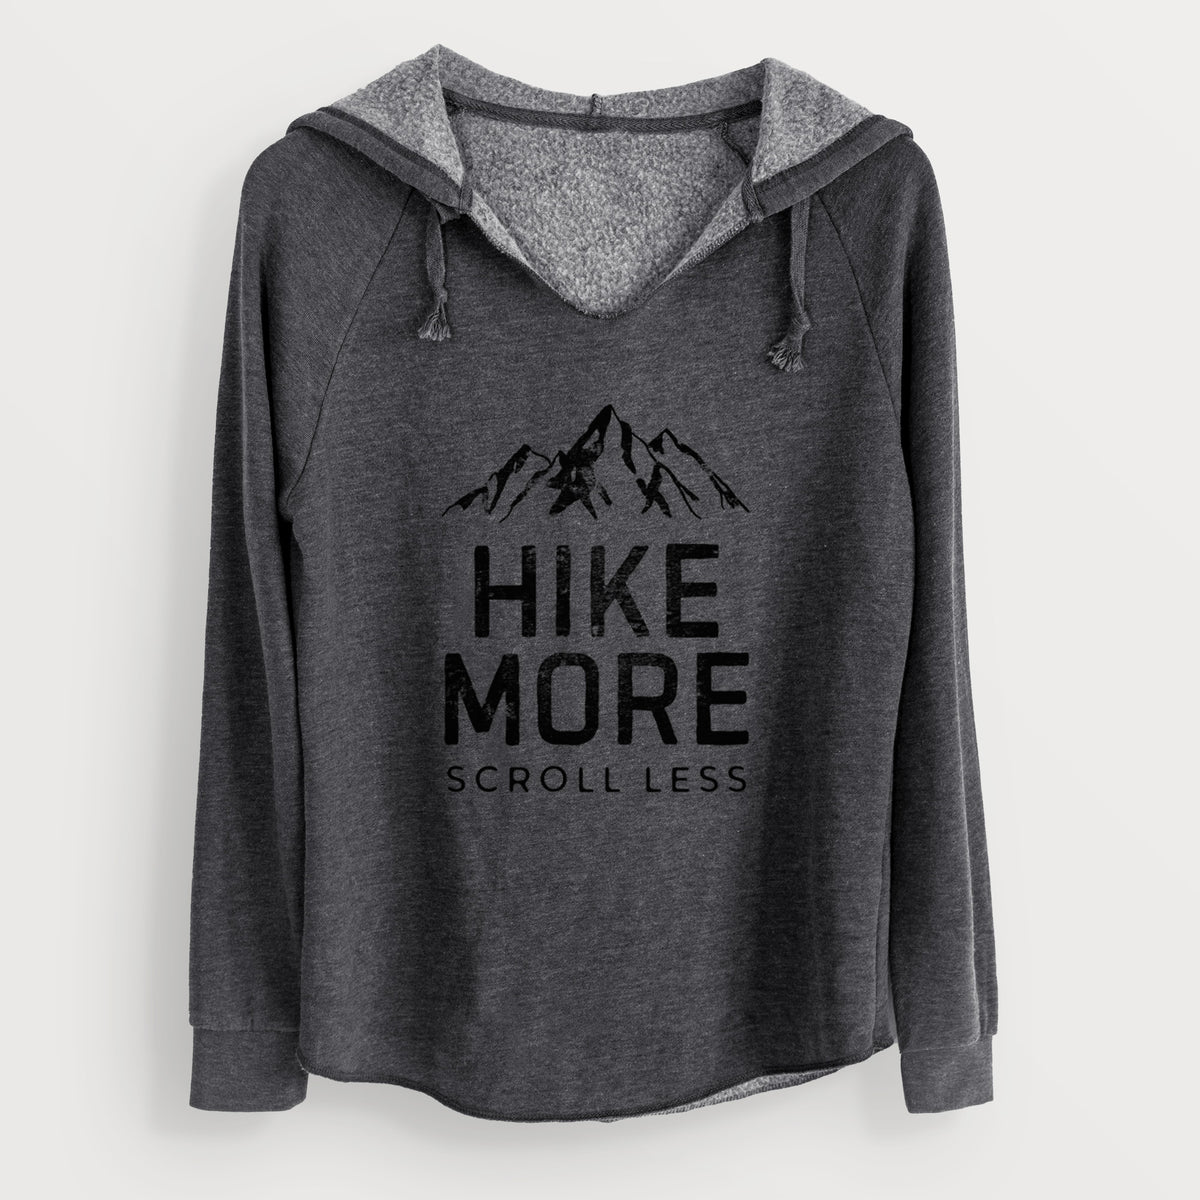 Hike More - Scroll Less - Cali Wave Hooded Sweatshirt